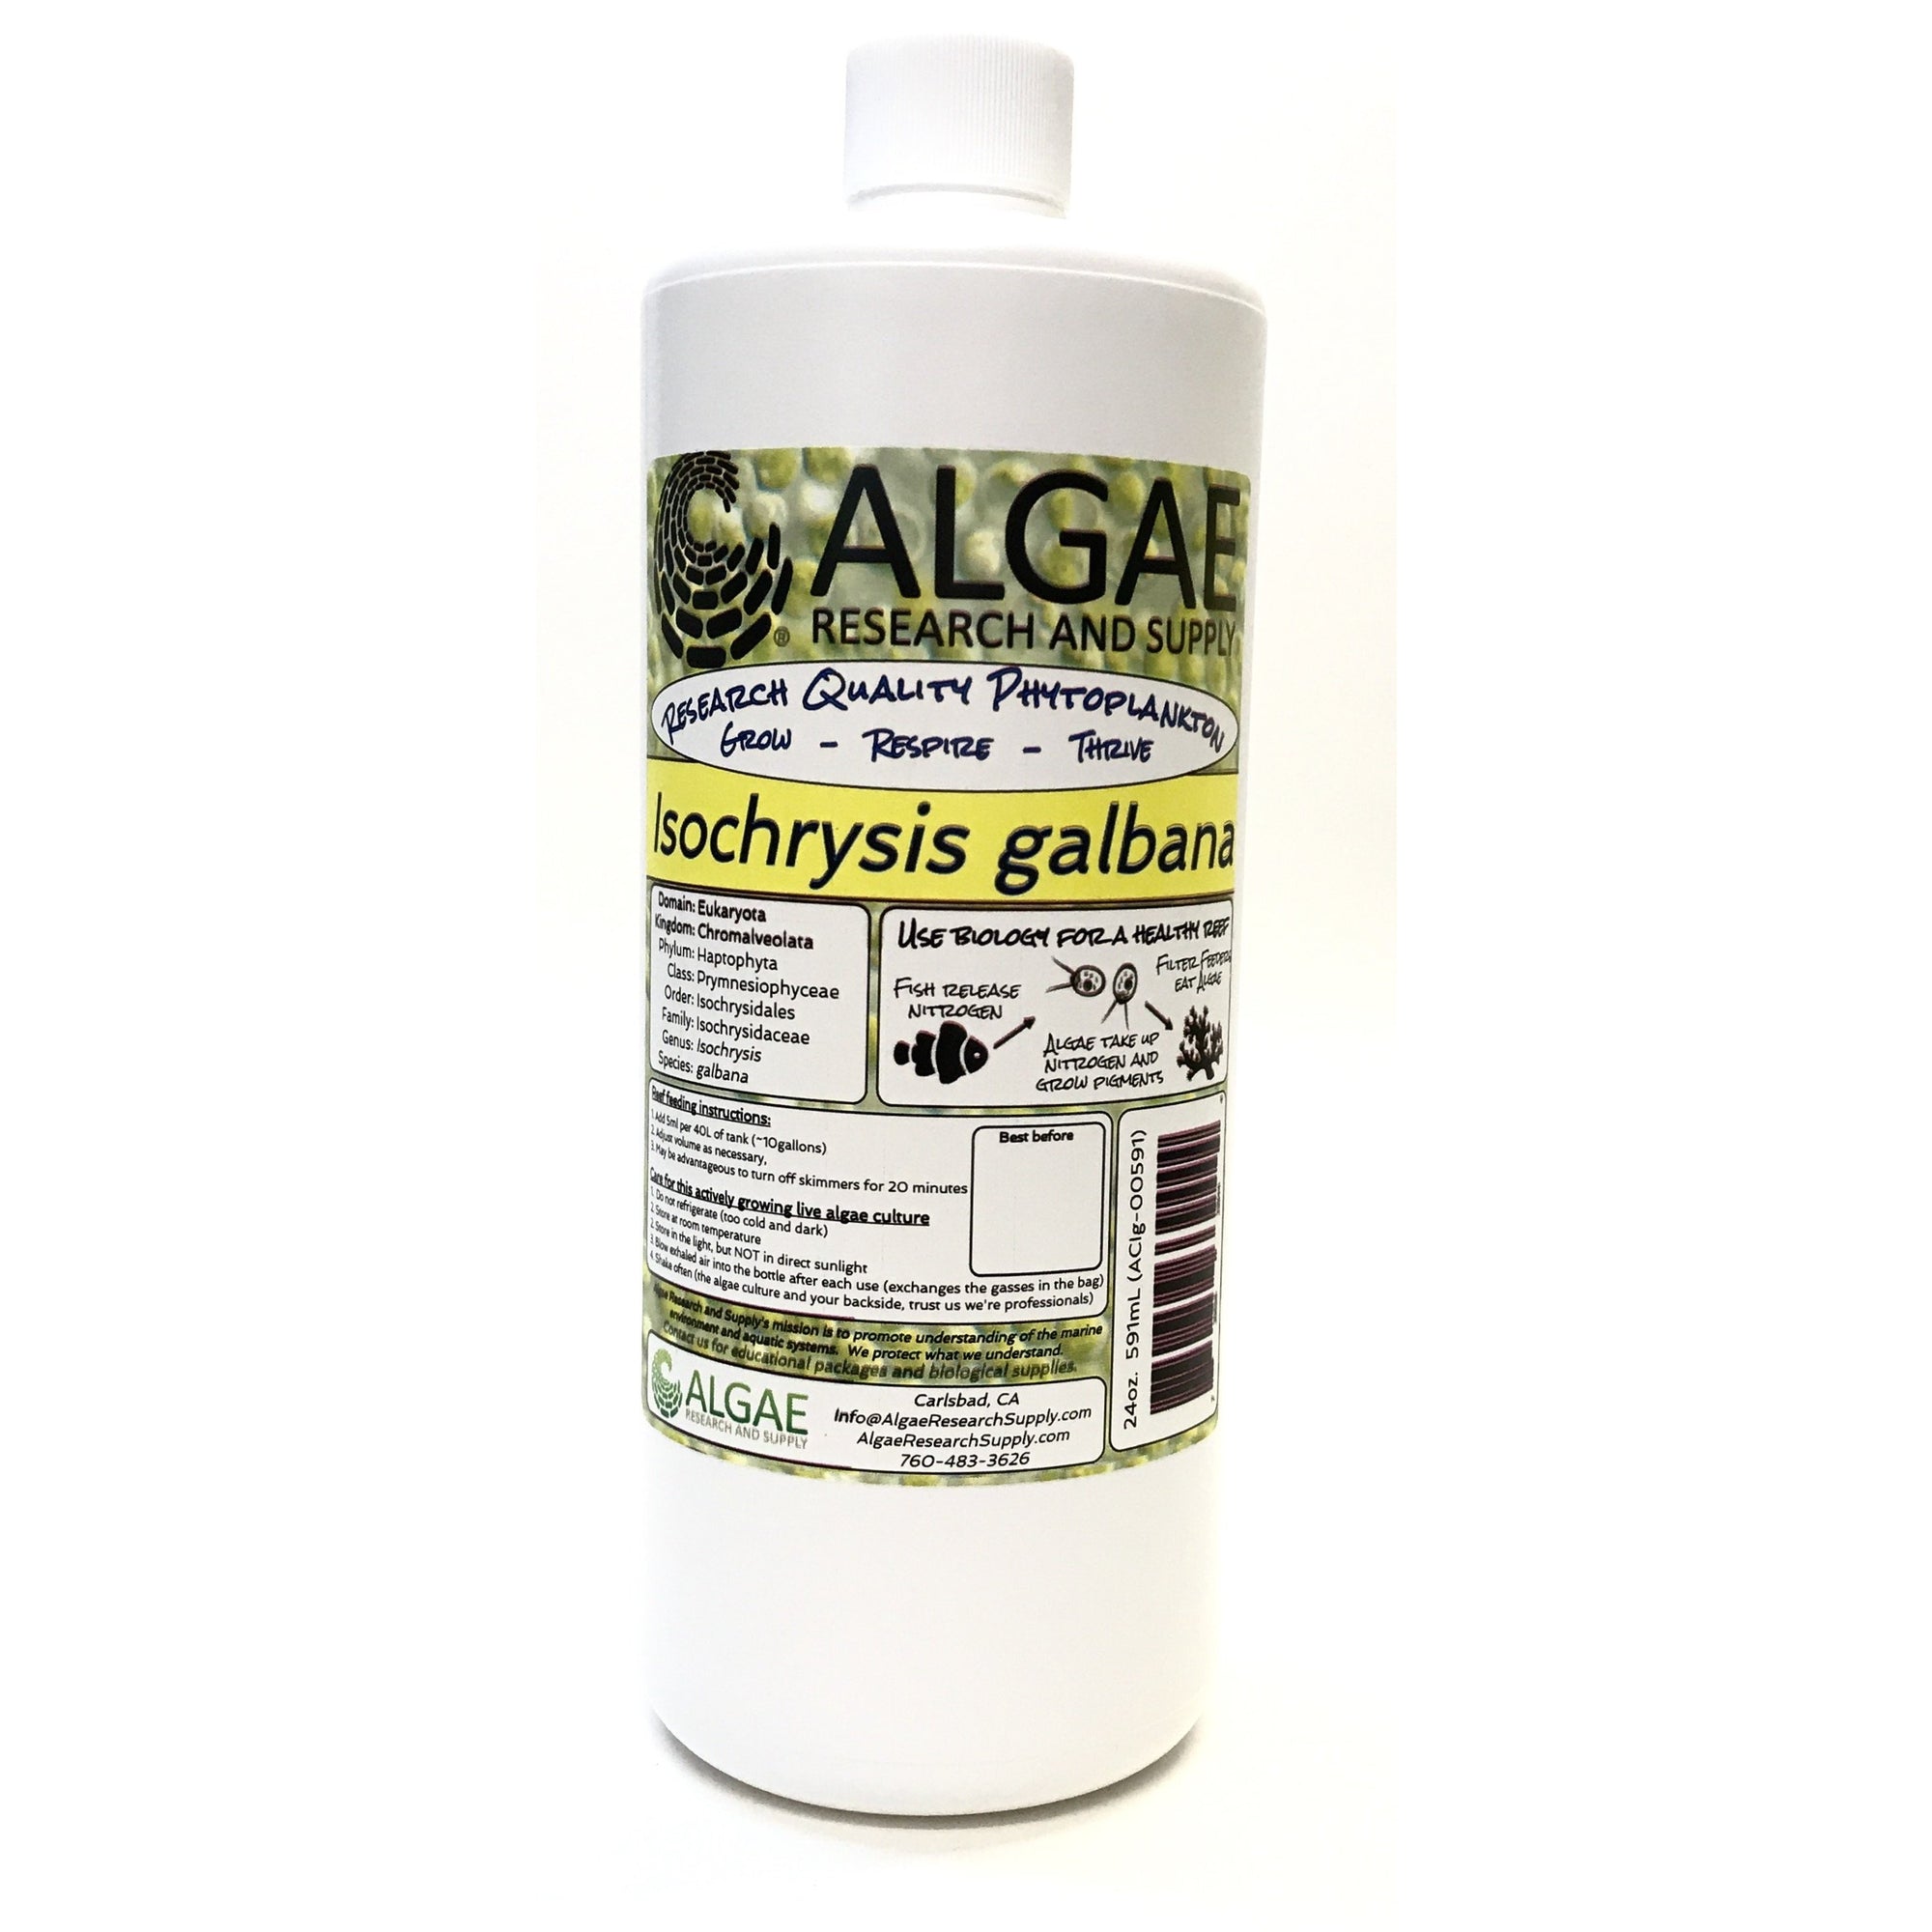 Algae Research Supply: Algae Culture for Isochrysis galbana